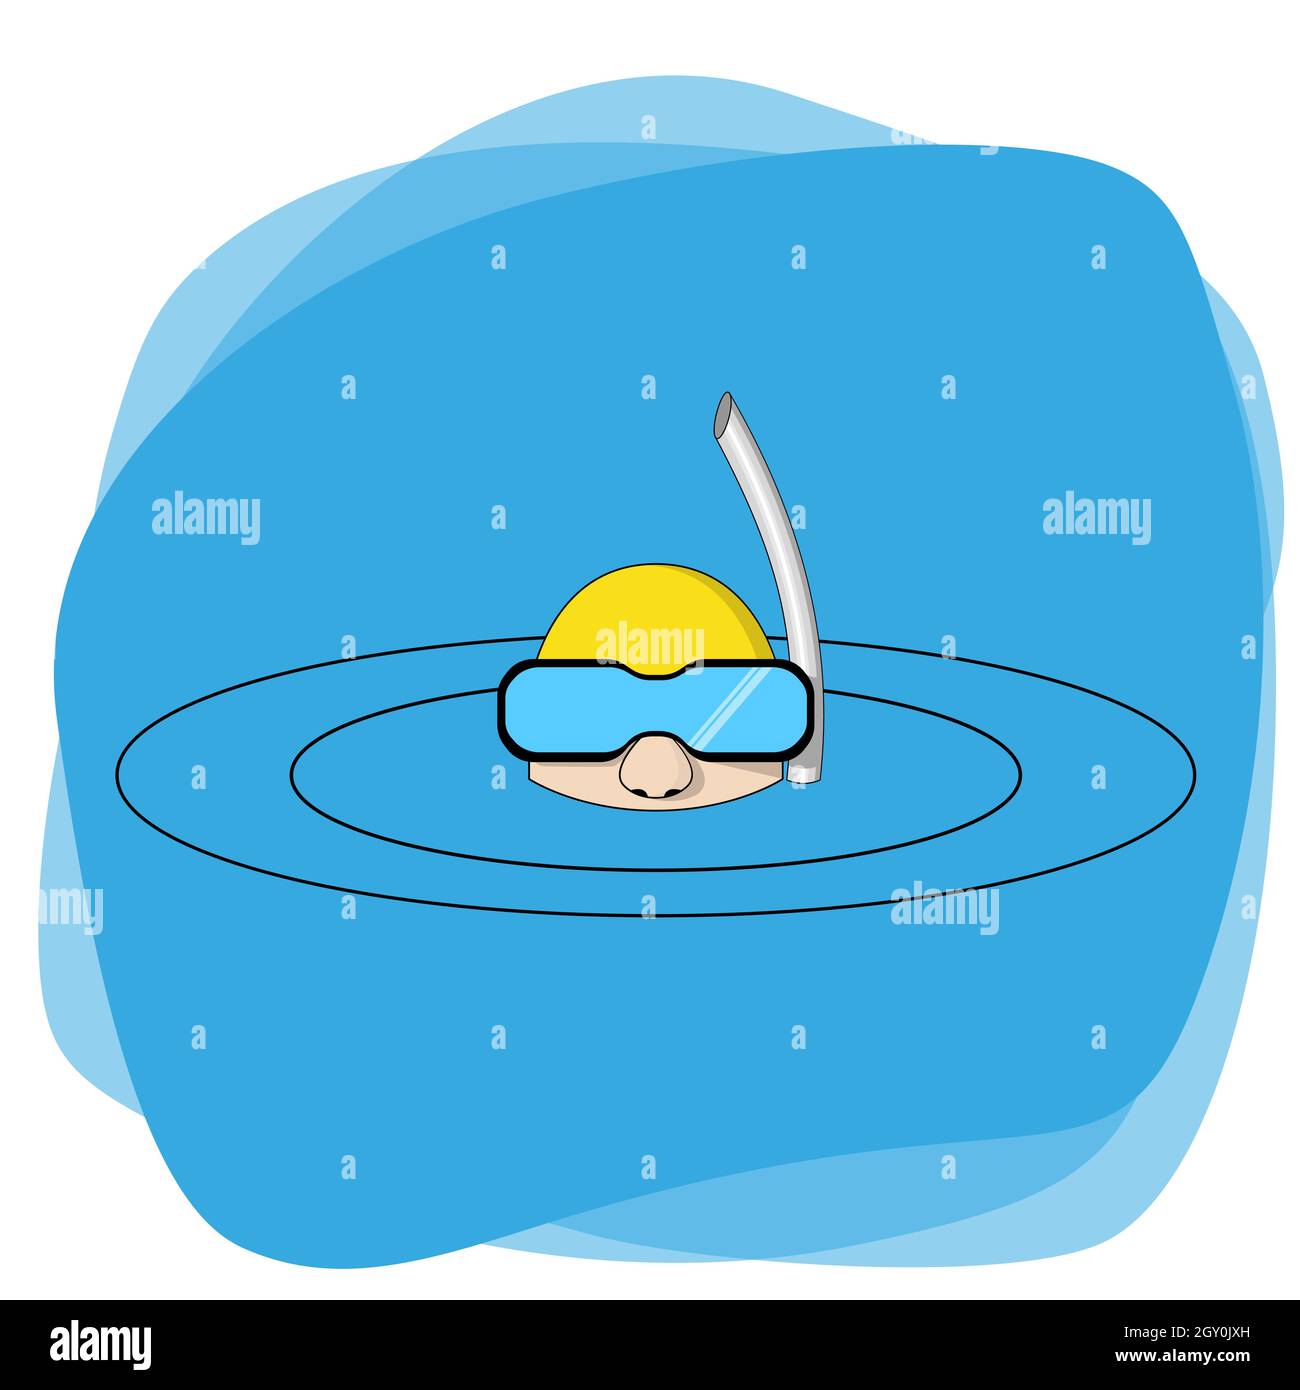 Ein Mann im Wasser in einer Maske und mit einem Schnorchelschlauch. Kreise in blauem Wasser und eine gelbe Mütze zum Schwimmen auf seinem Kopf. Isolierter Vektor. Stock Vektor